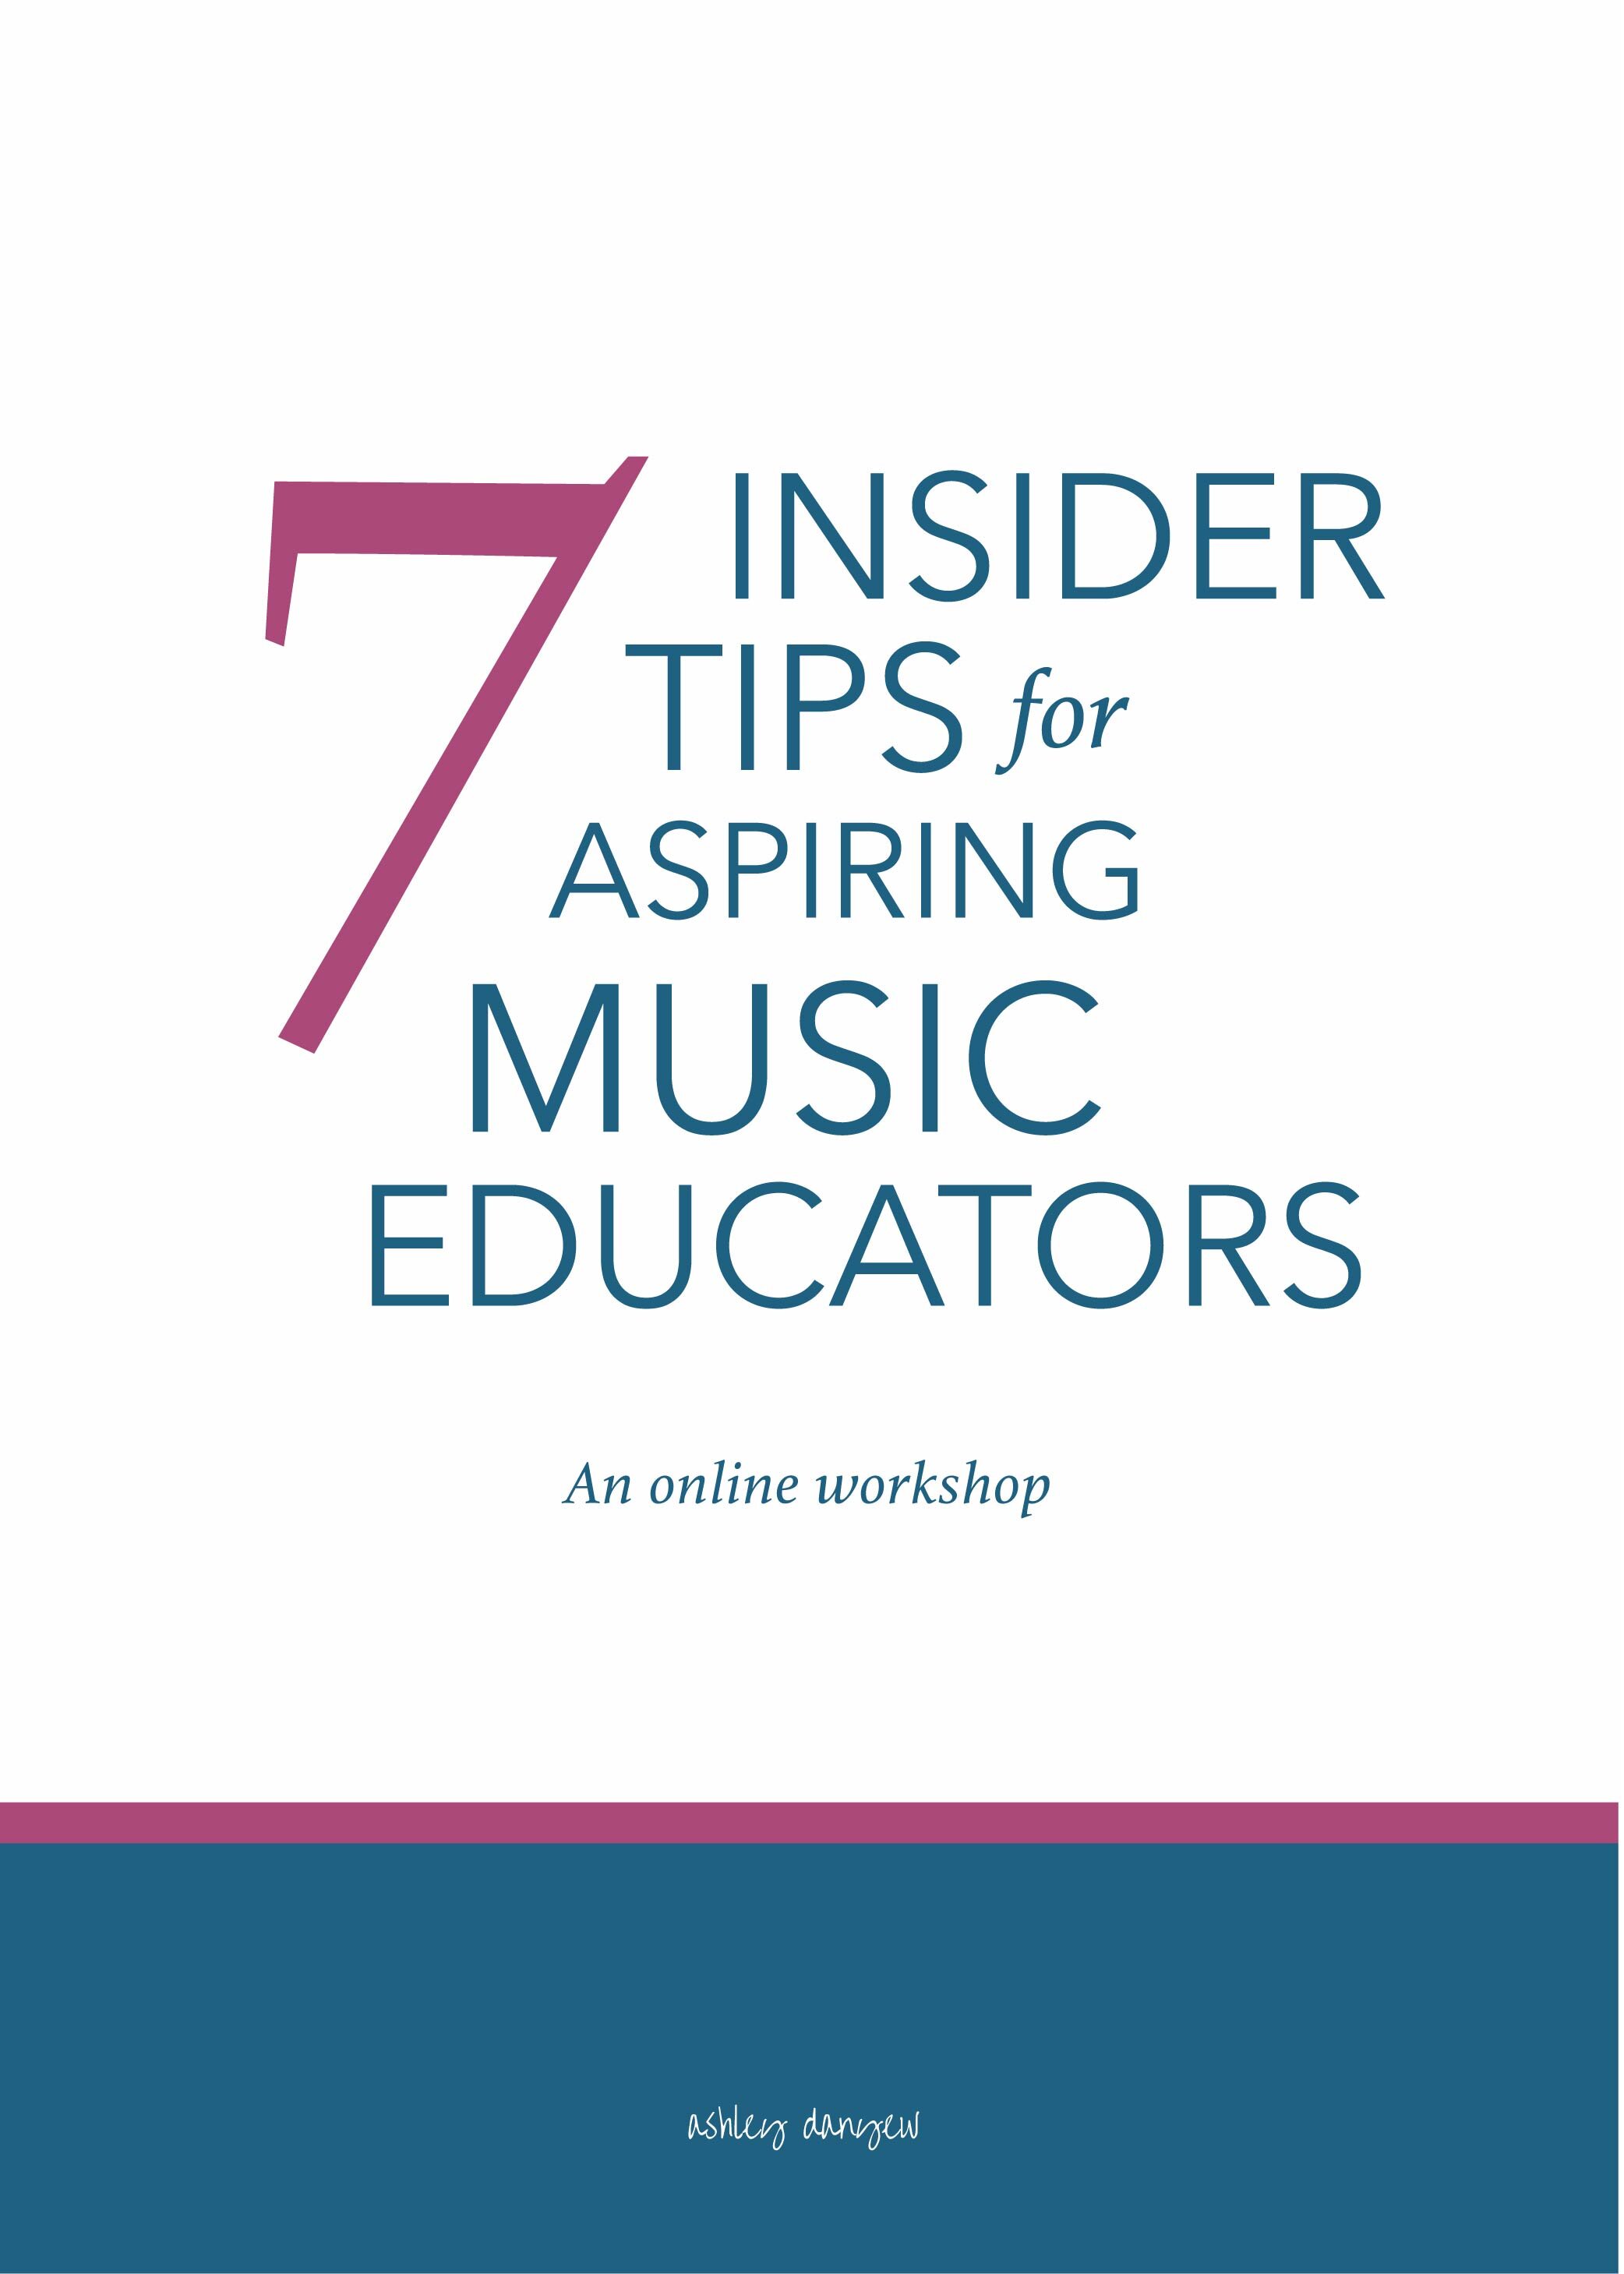 7 Insider Tips for Music Educators